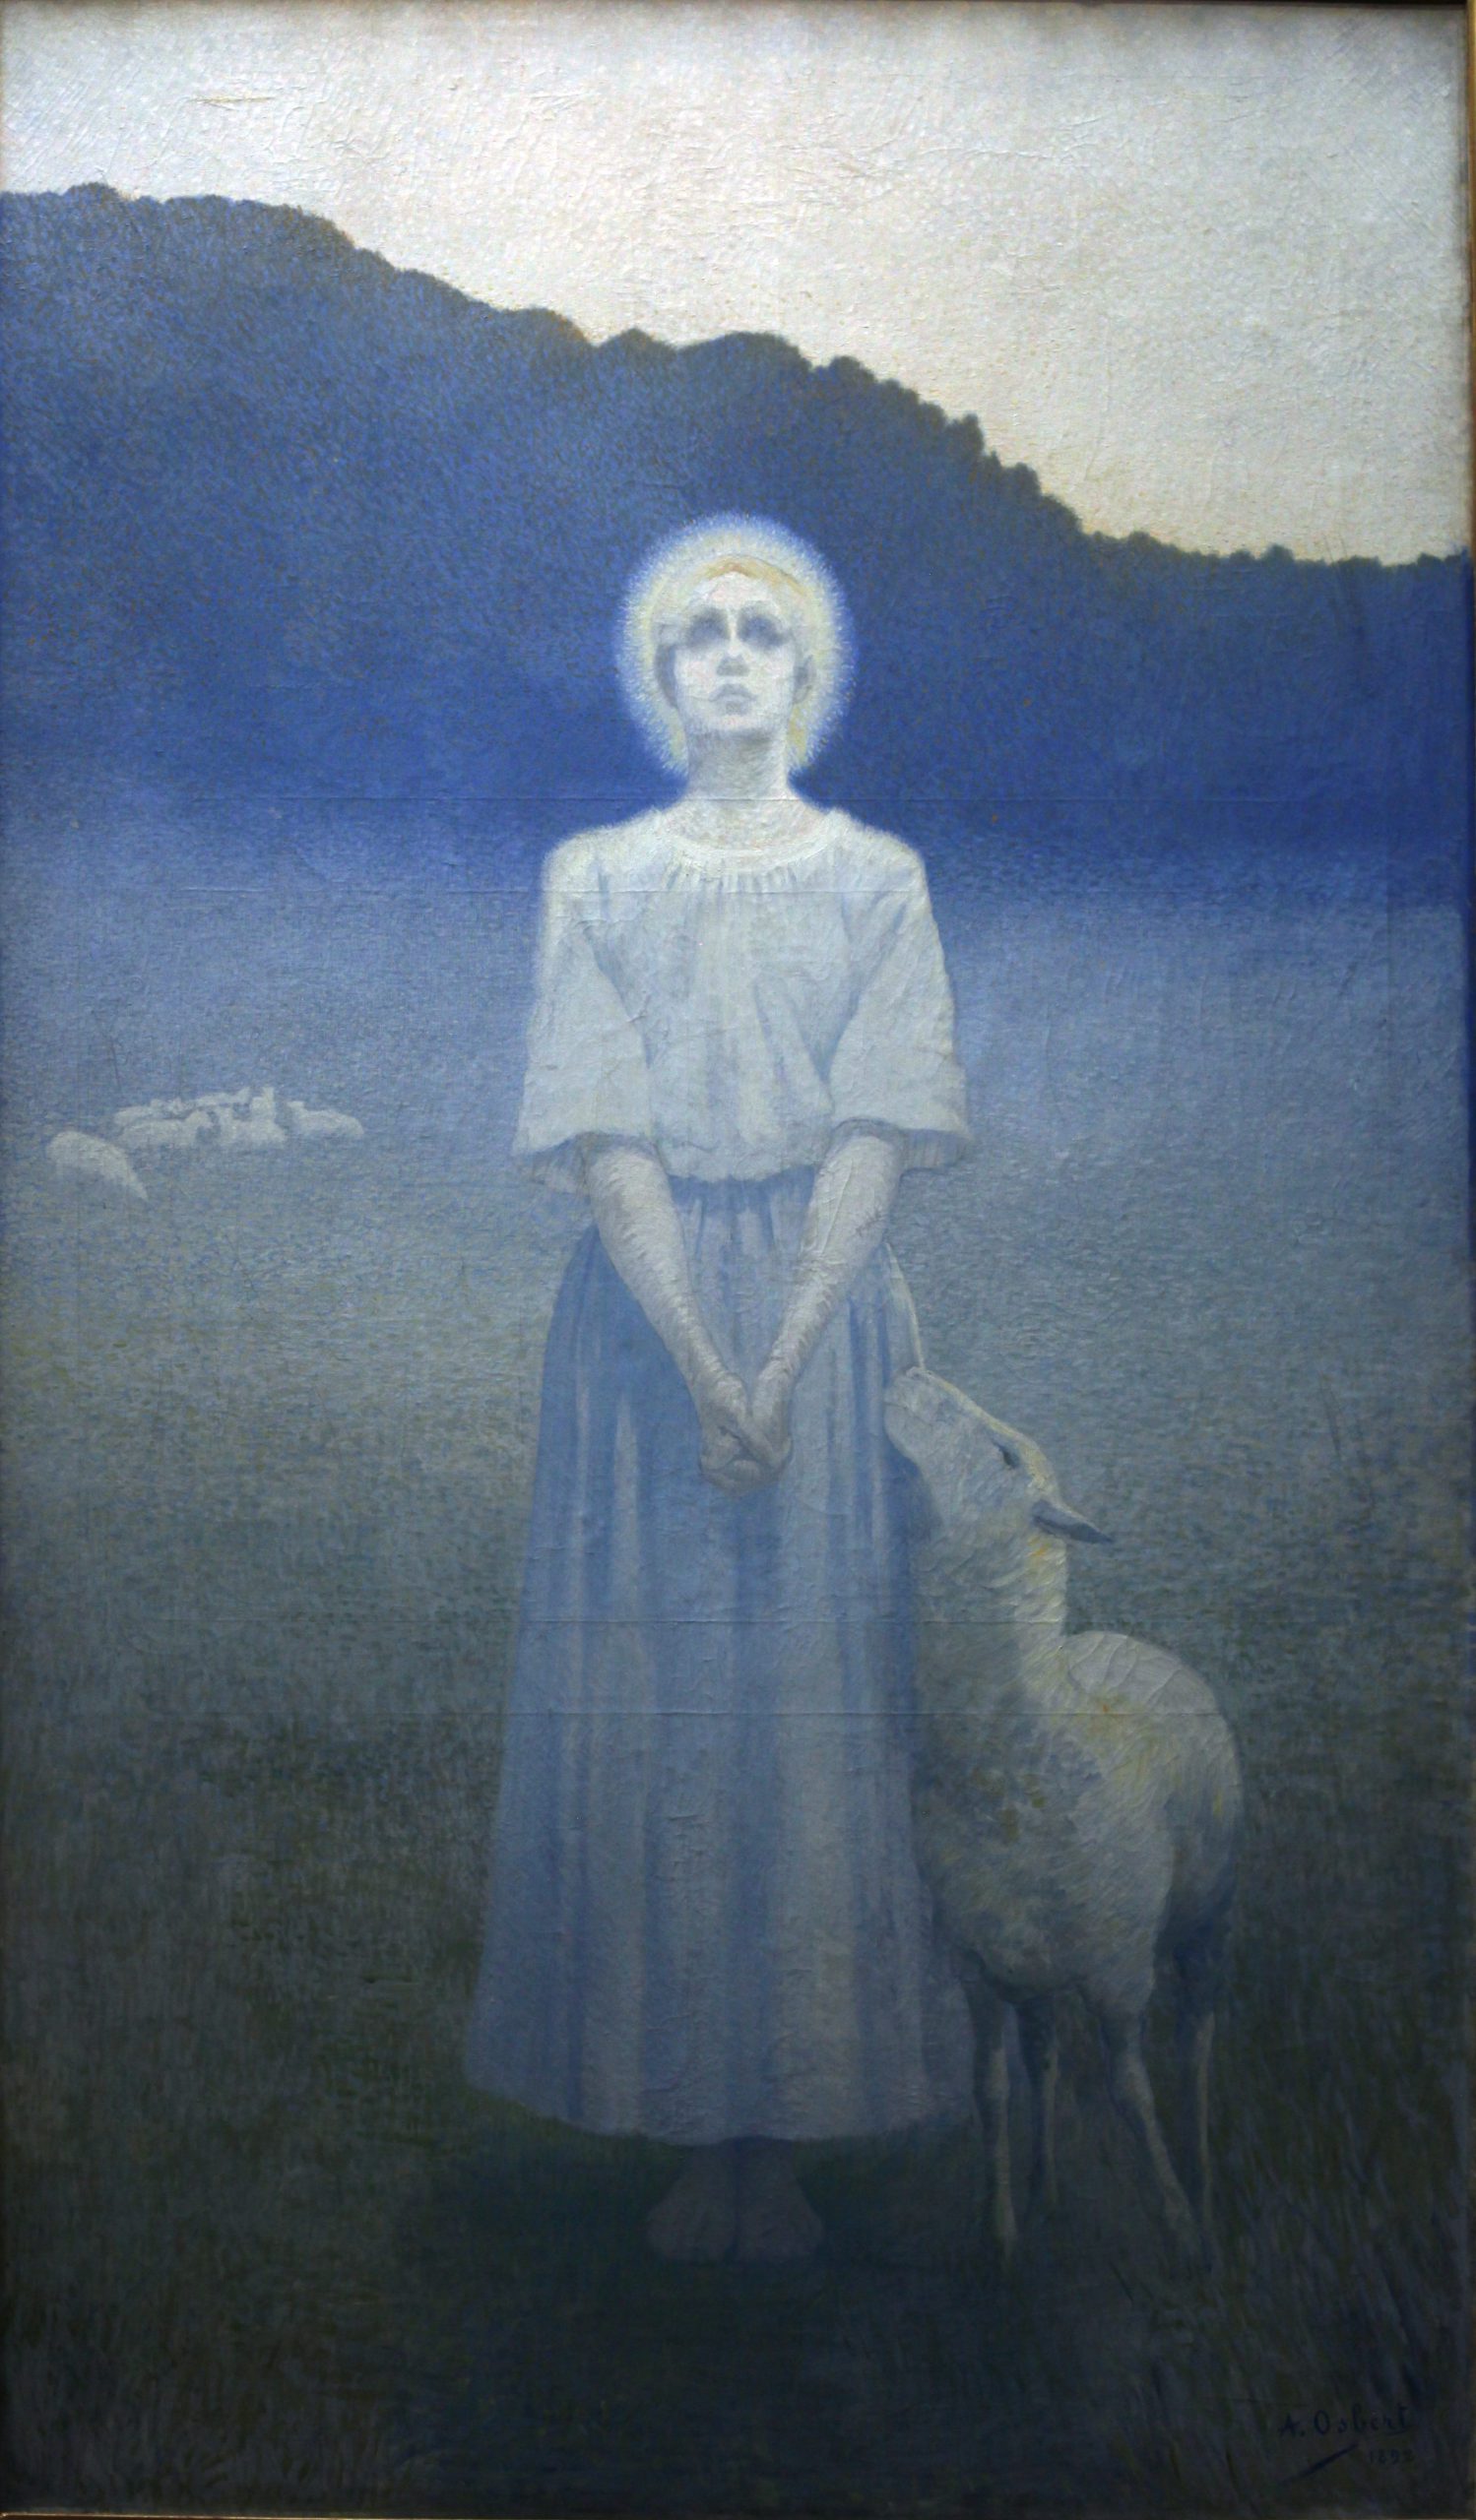 Osbert, Alphonse. 1892. Vision, huile sur toile, 235 x 138 cm, Paris, Musée d’Orsay.
